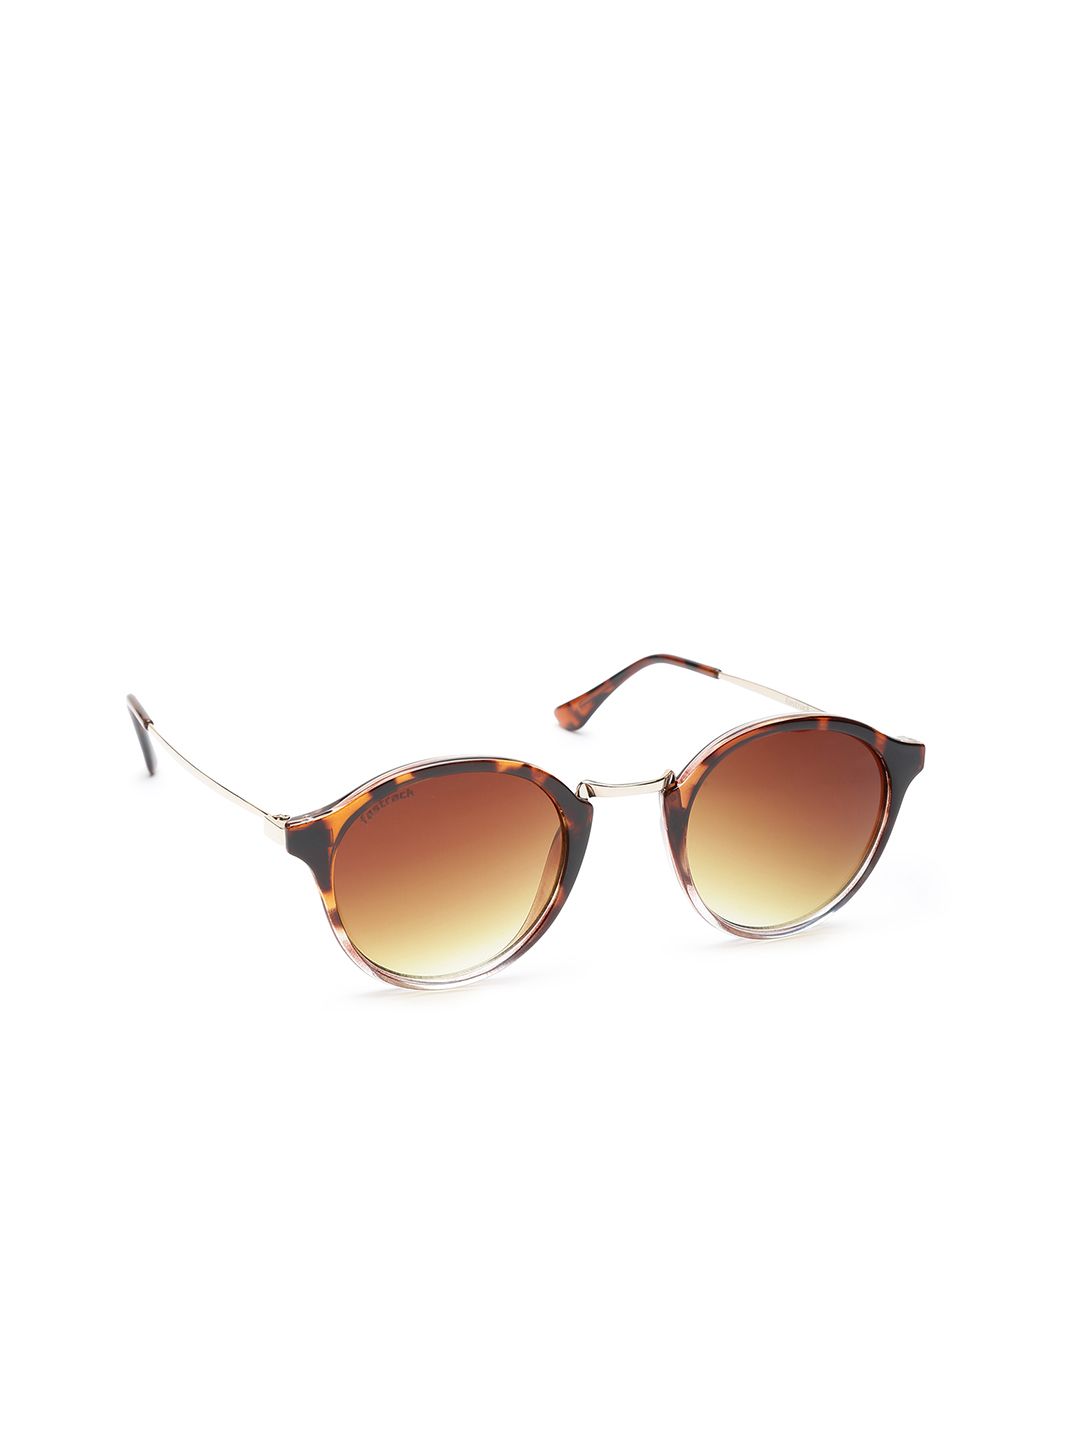 Fastrack Women Oval Sunglasses C085BR2F Price in India